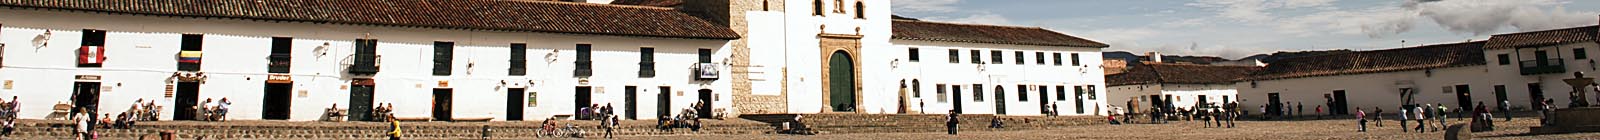 Villa de Leyva - Banner